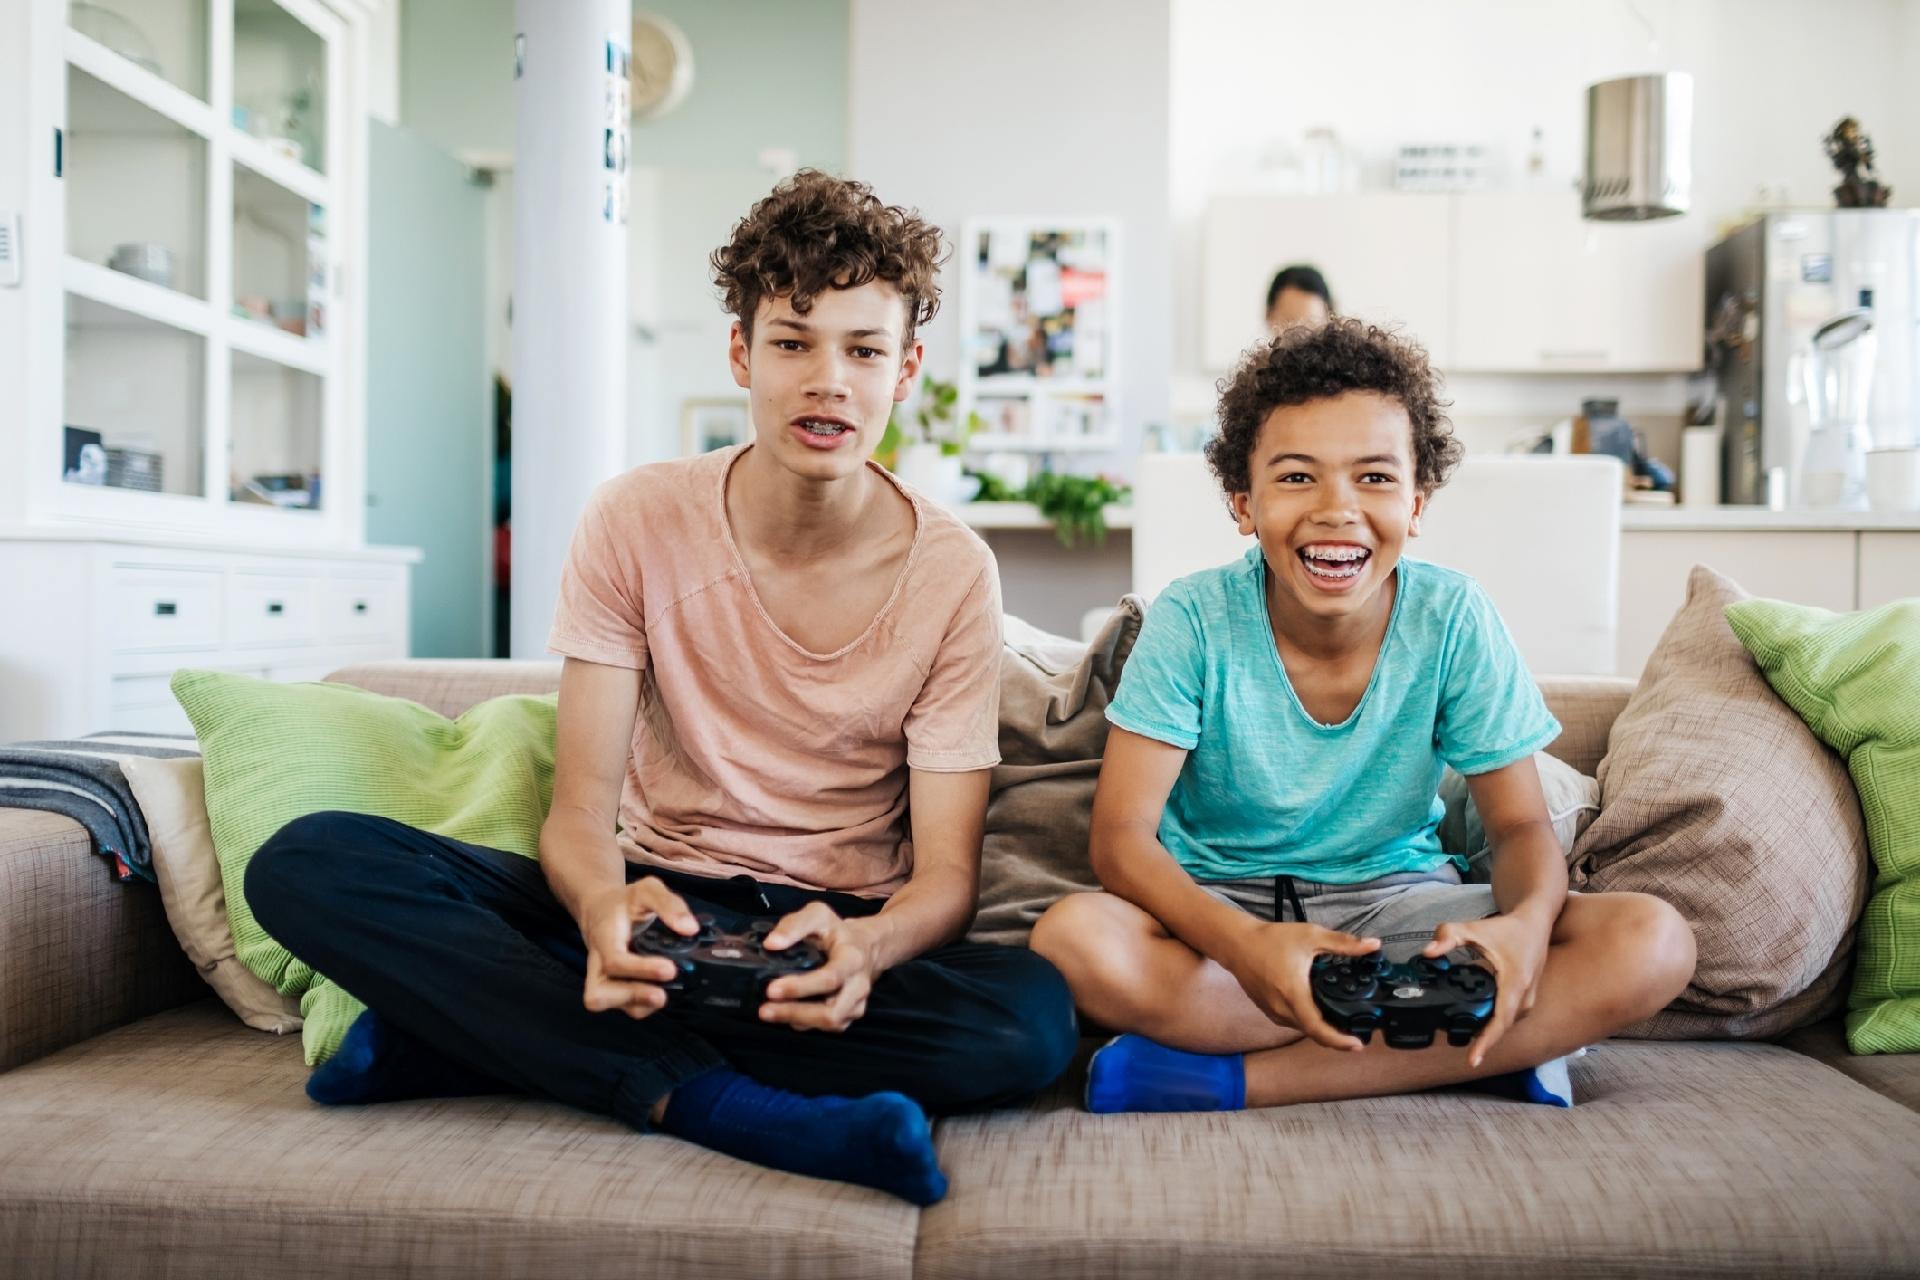 Adolescente aprende a desenvolver jogos sozinho e lança game viral